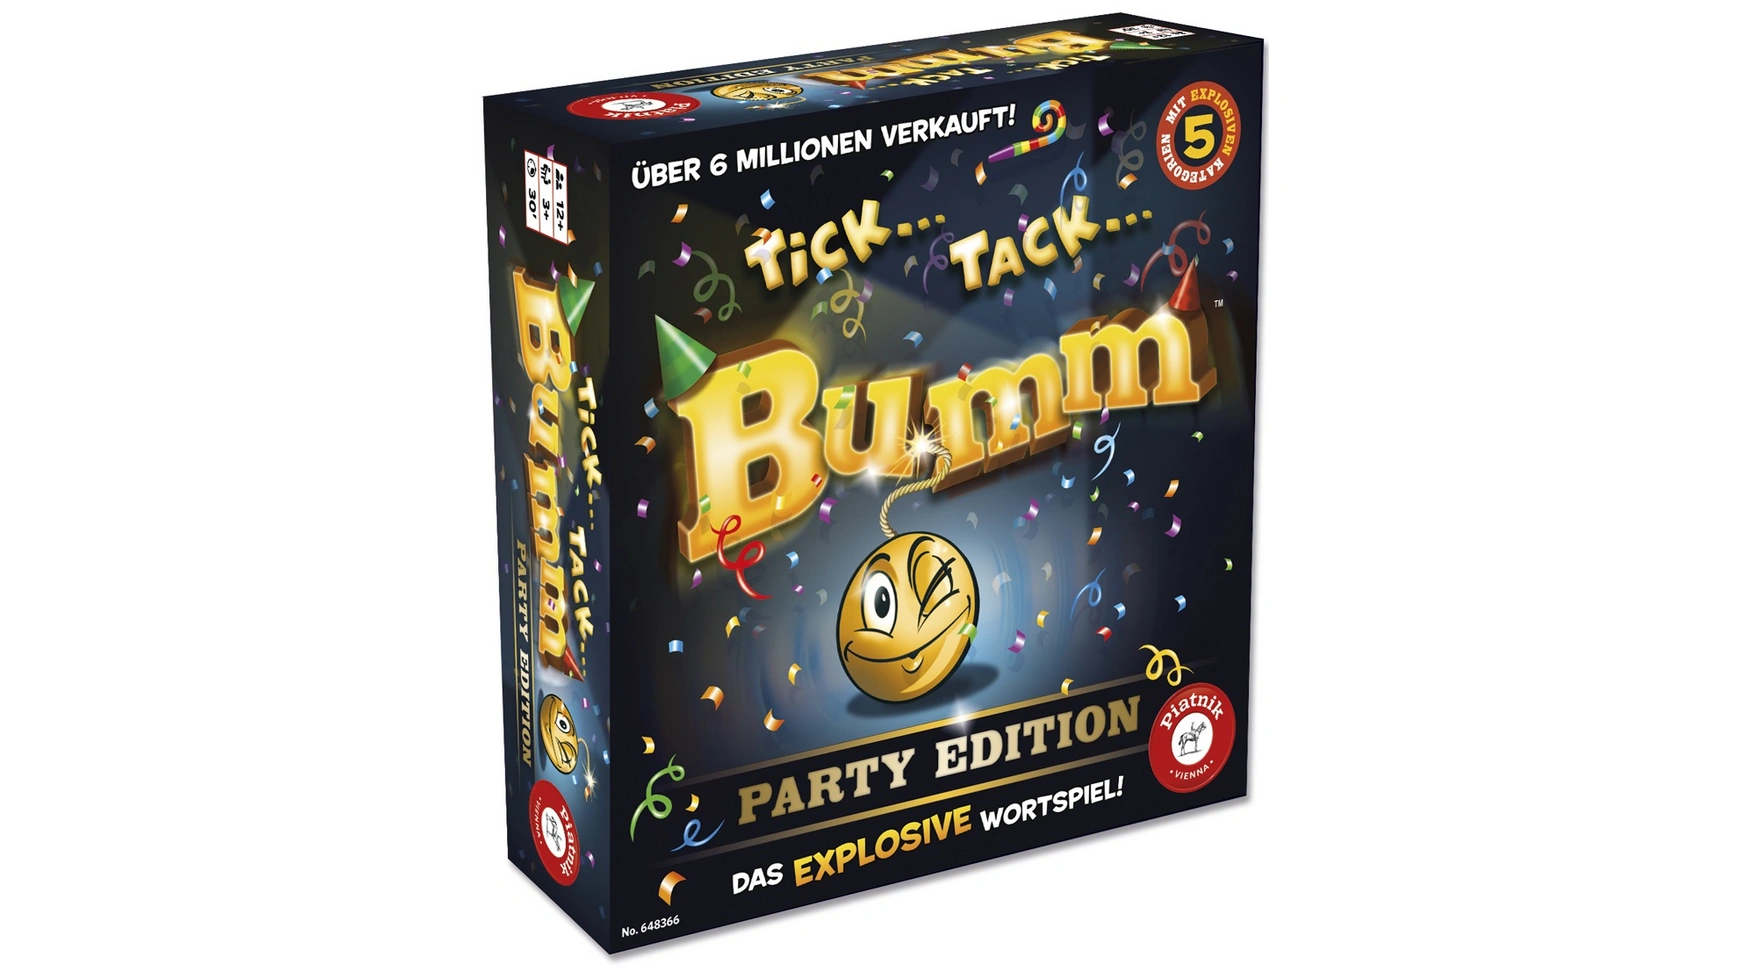 Tick tack boom party edition Piatnik flamingo plastic thumb tack s1x30